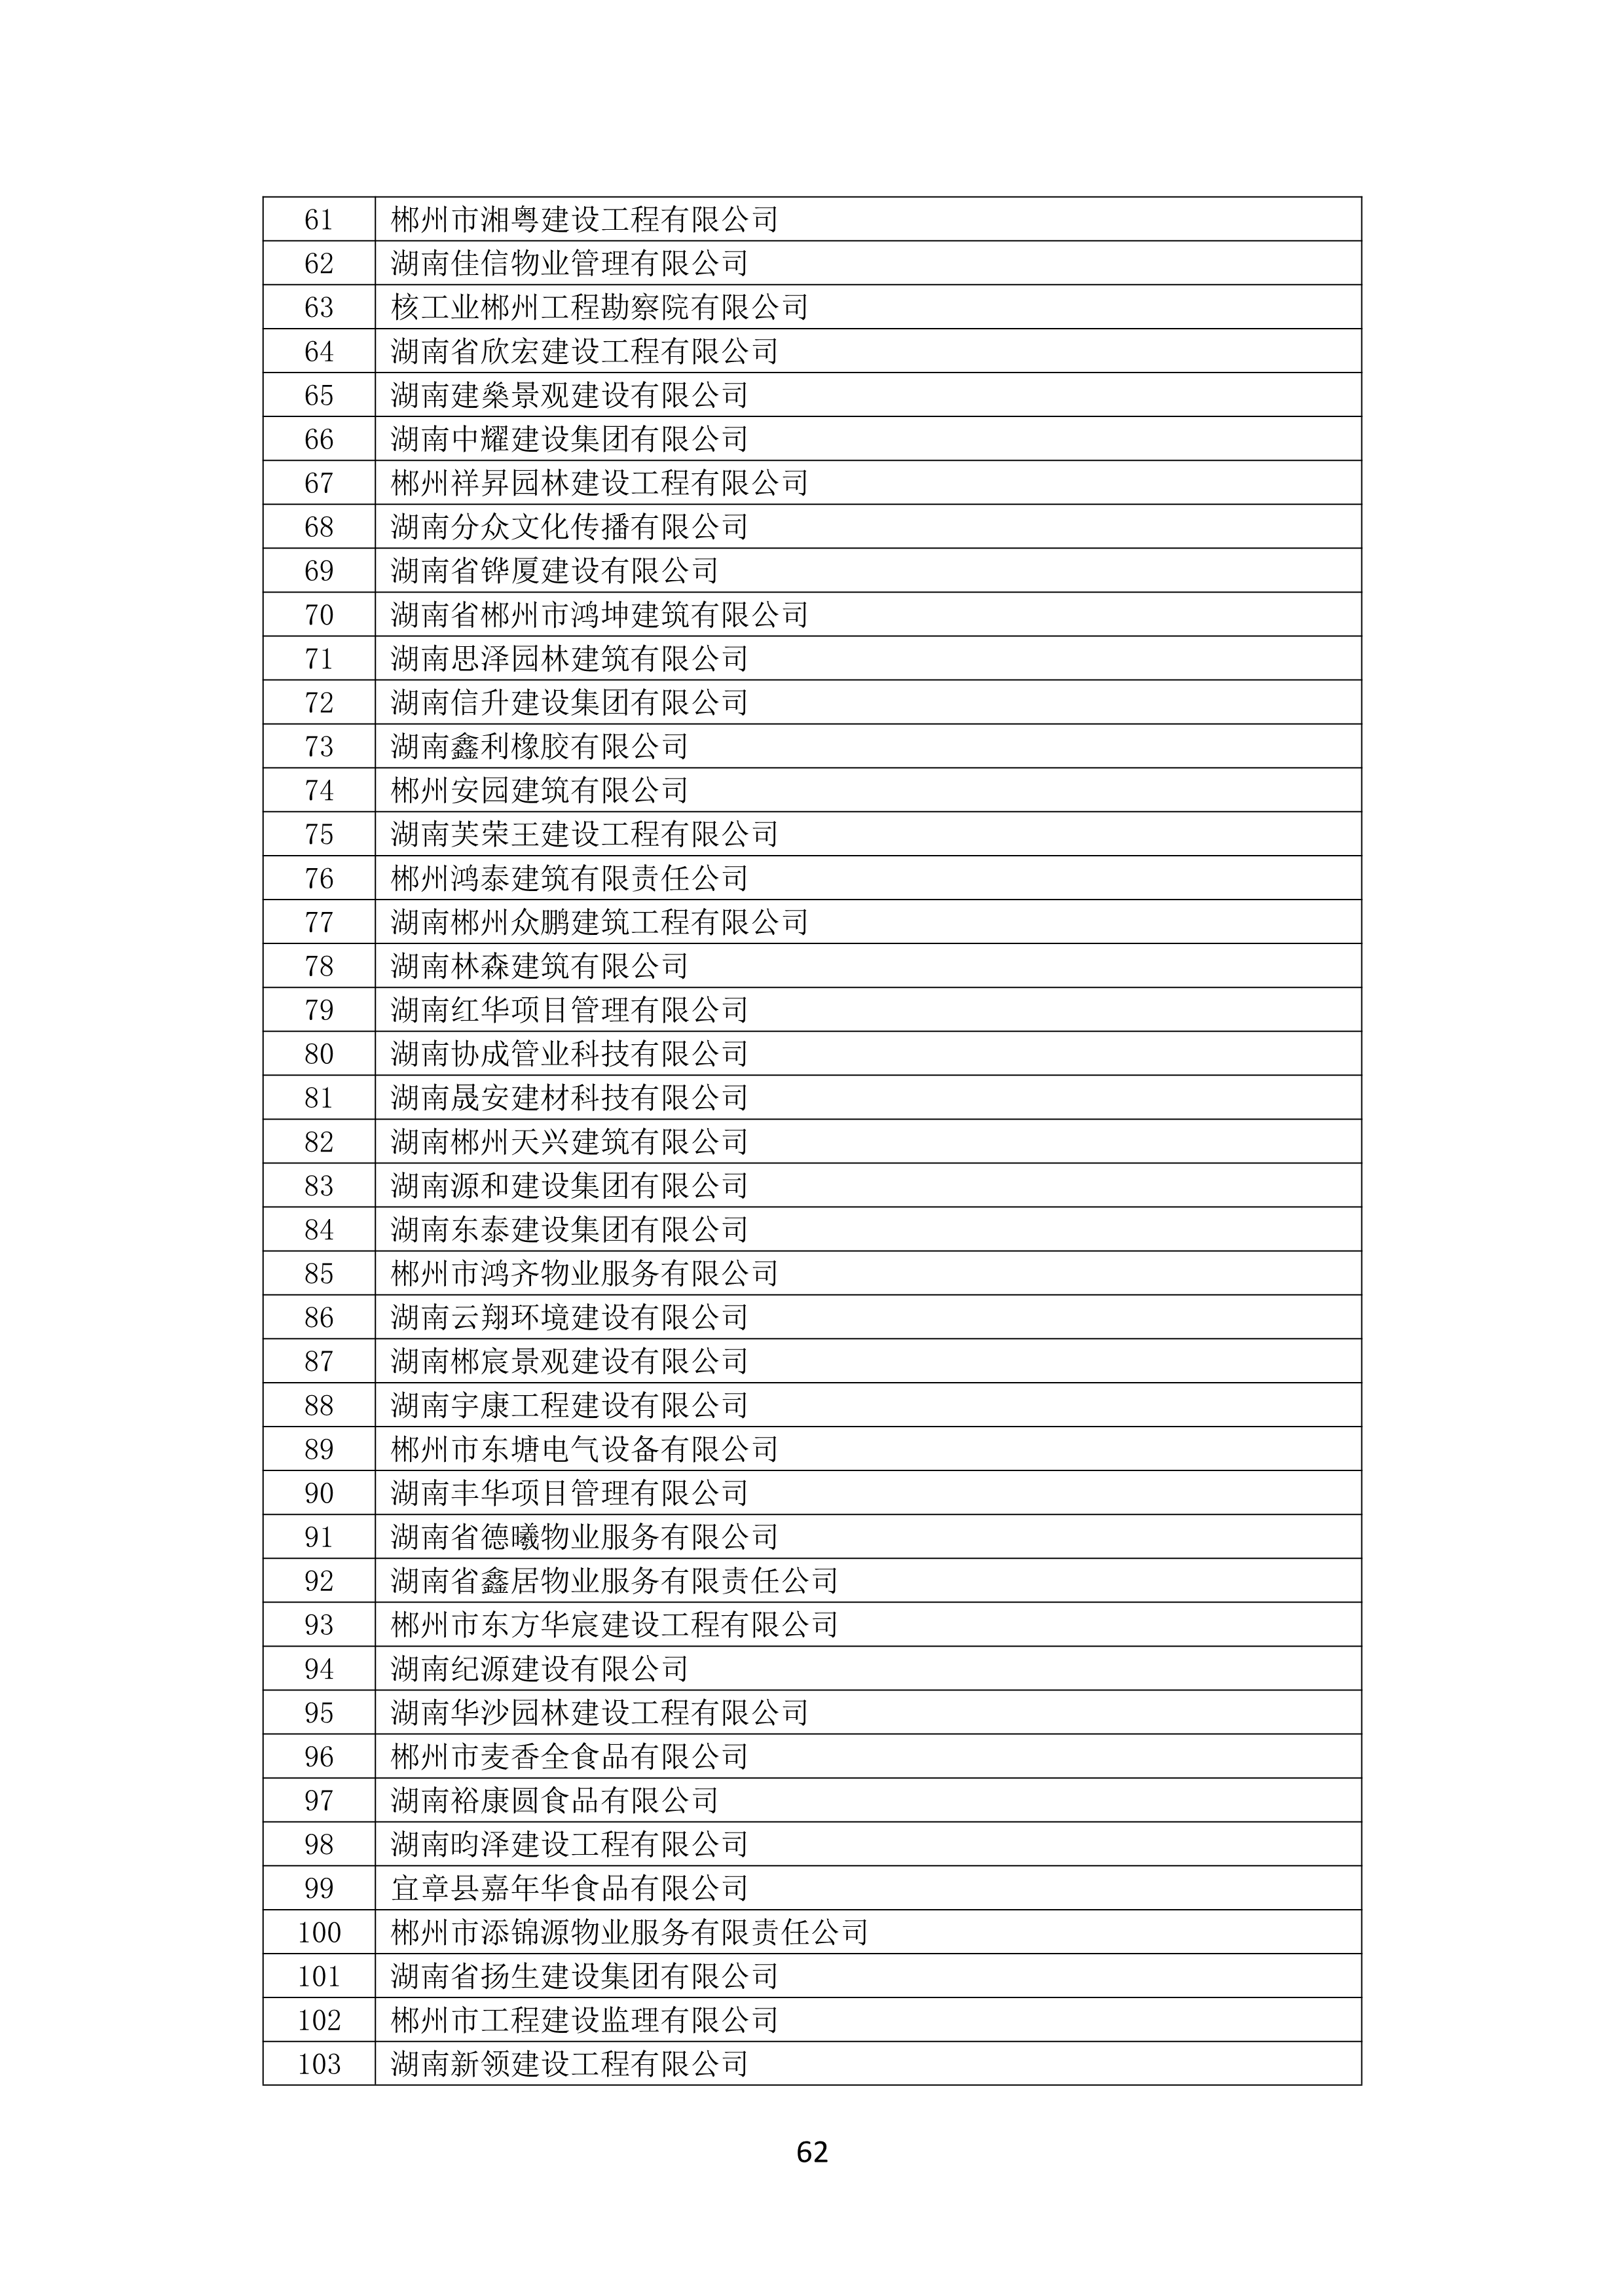 2021 年(nián)度湖南省守合同重信用企業名單_63.png